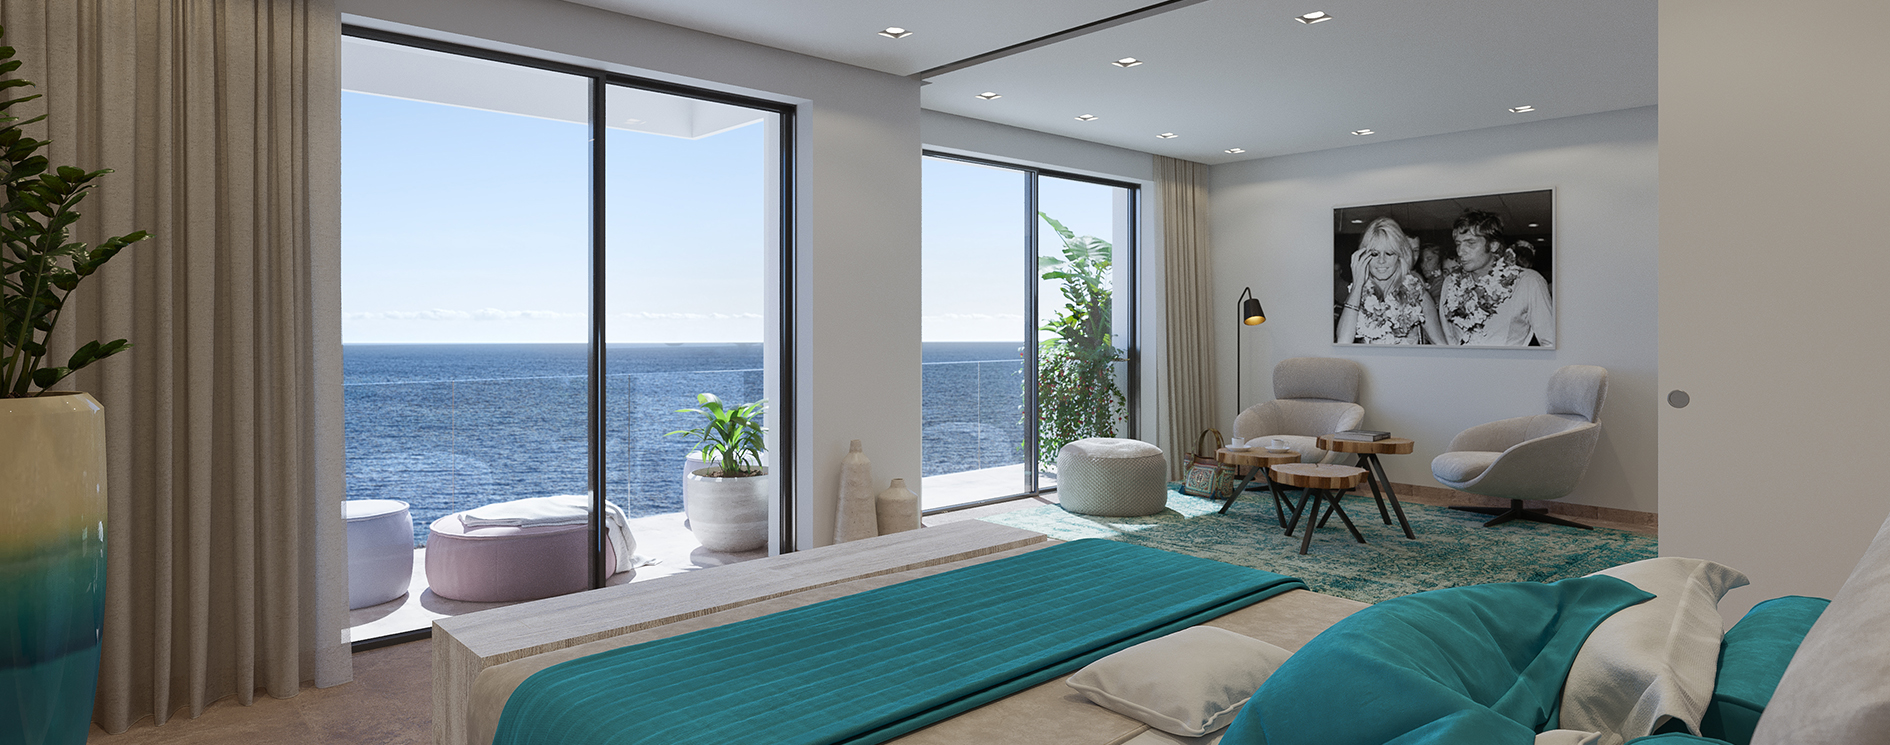 La construcción del proyecto inmobiliario HIPPIEMENTS en Ibiza entra en su recta final